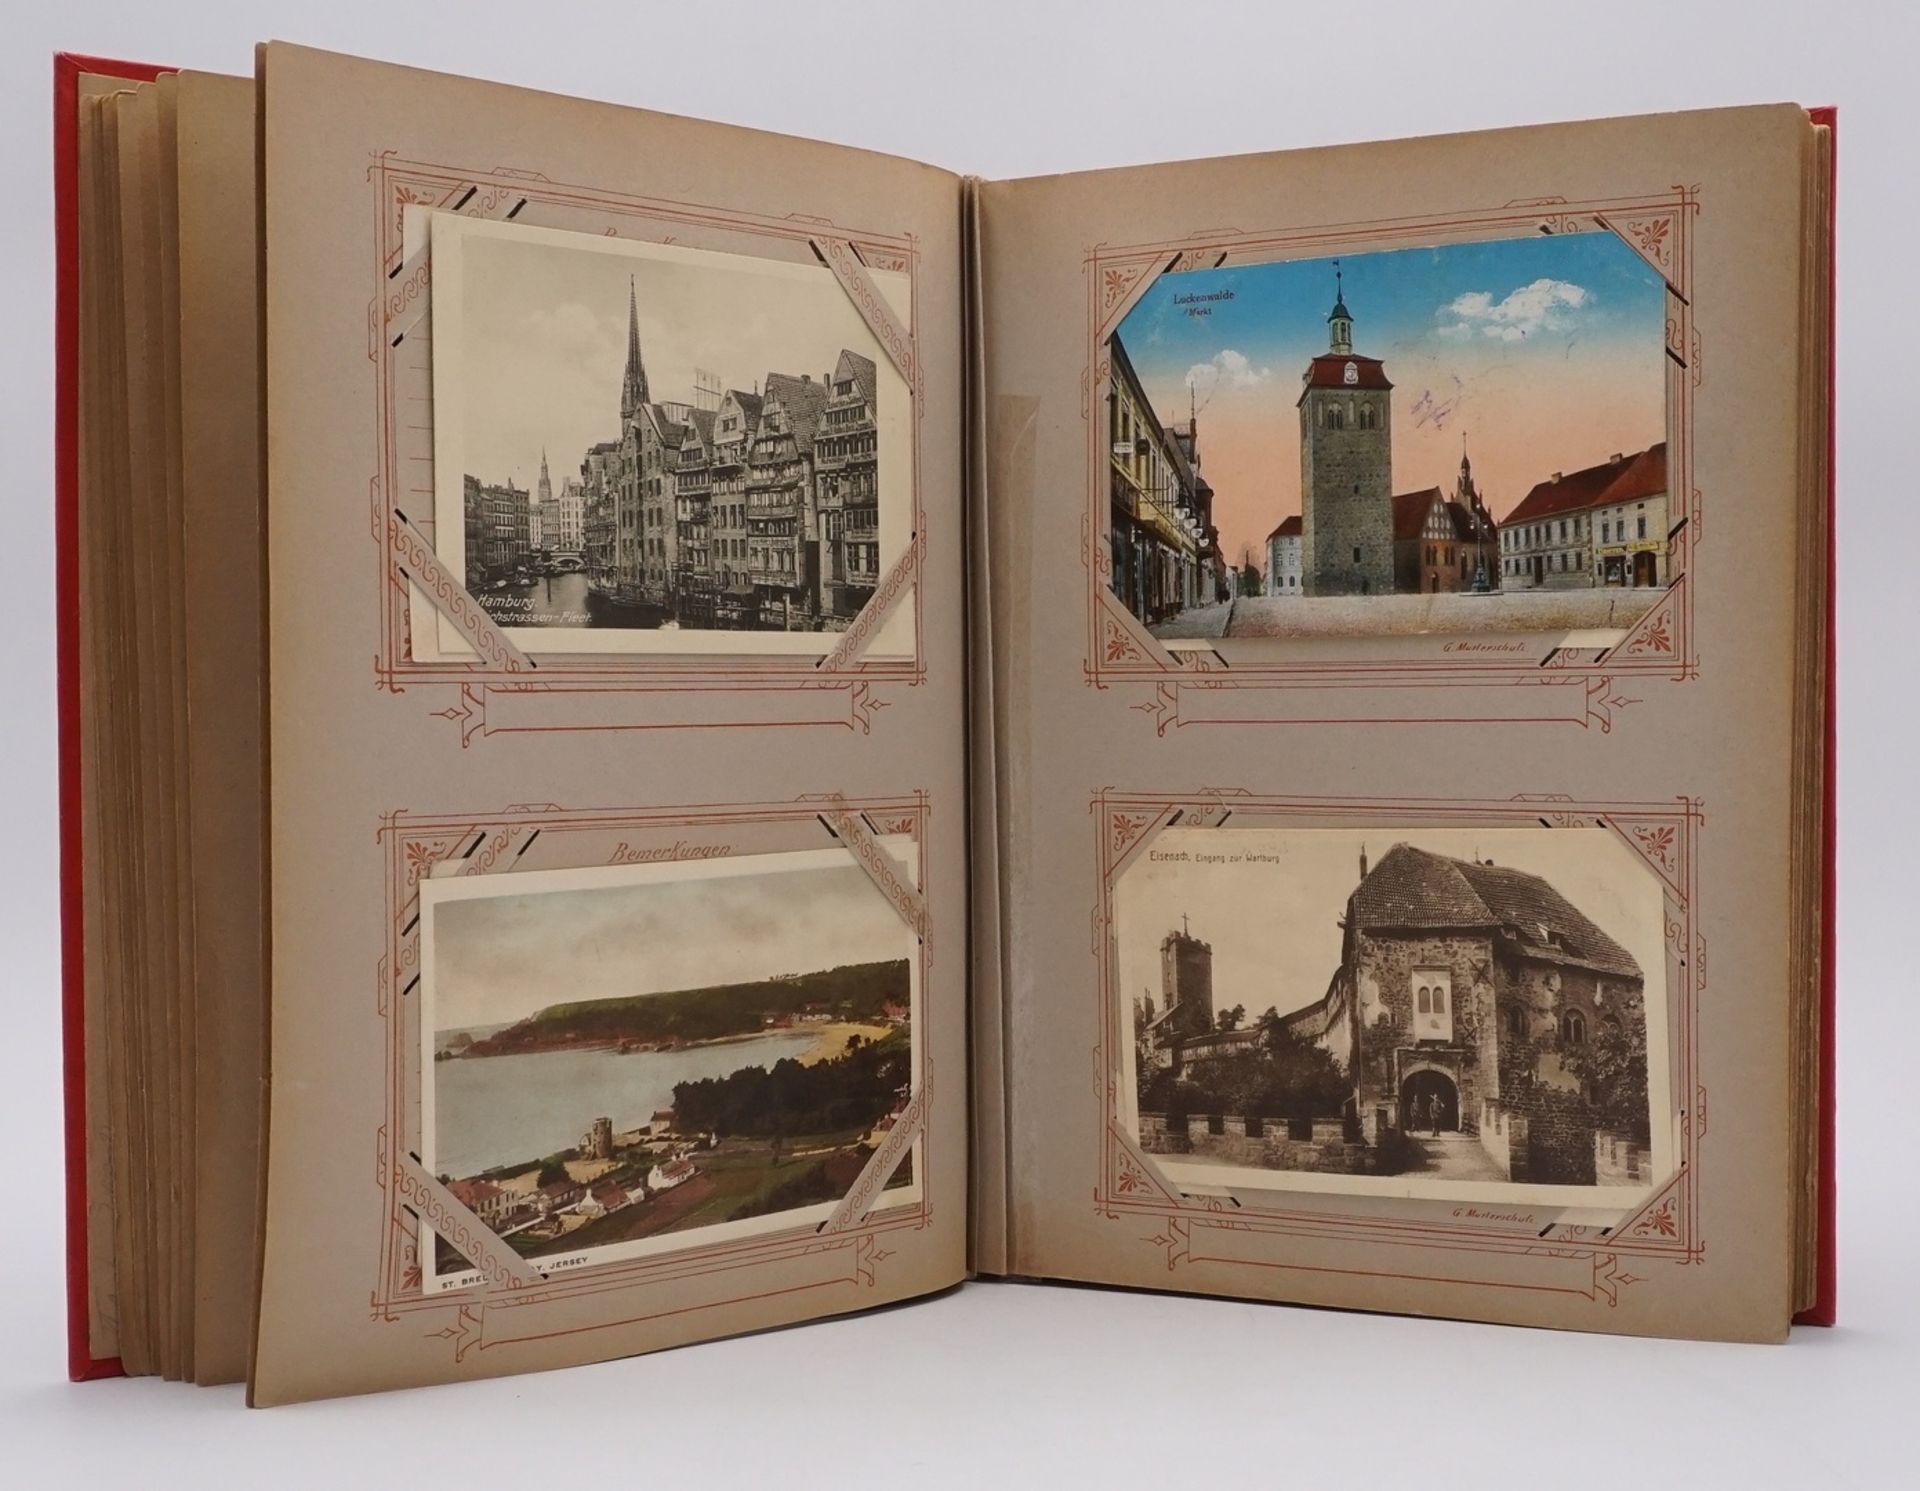 78 Ansichtskarten / Postkartenum 1900 - 1930, im original Jugendstil Album, unter anderem Hamburg, - Bild 4 aus 5